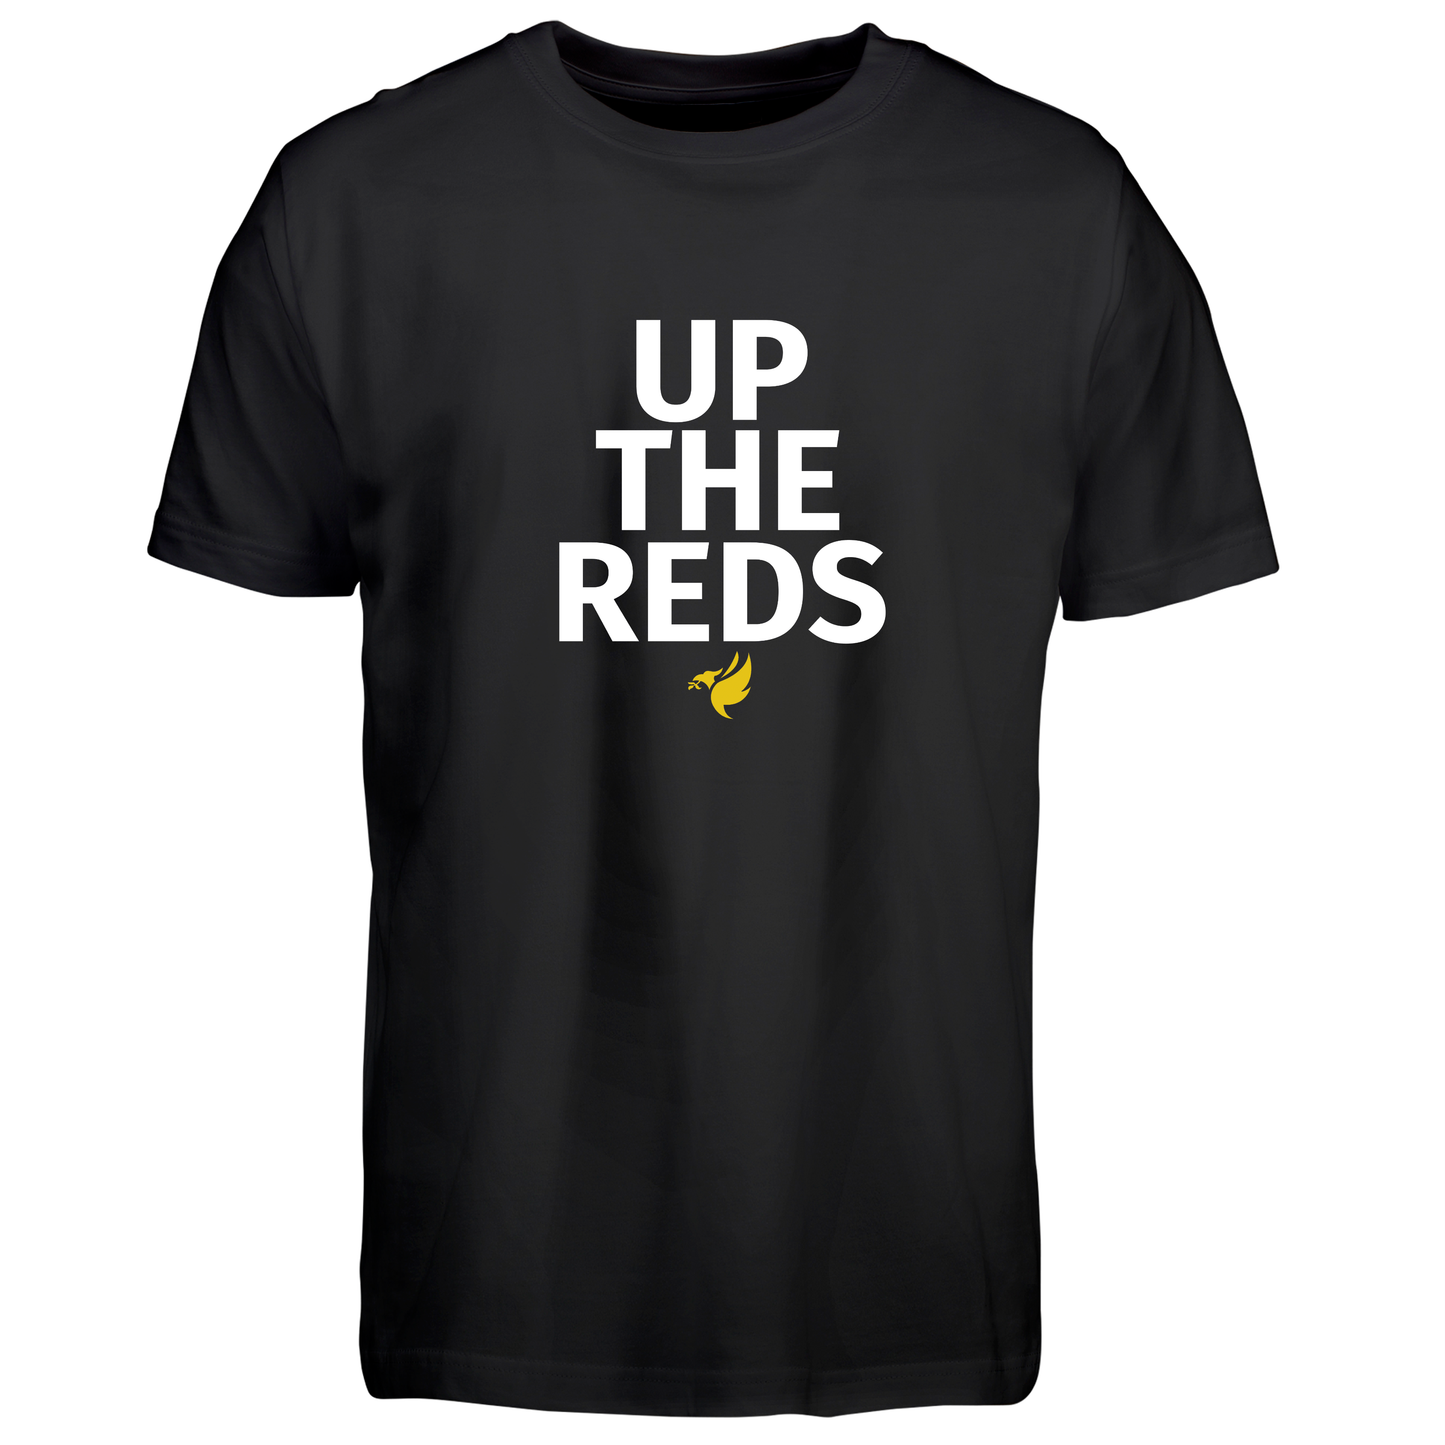 Up the reds - T-Shirt - Børn